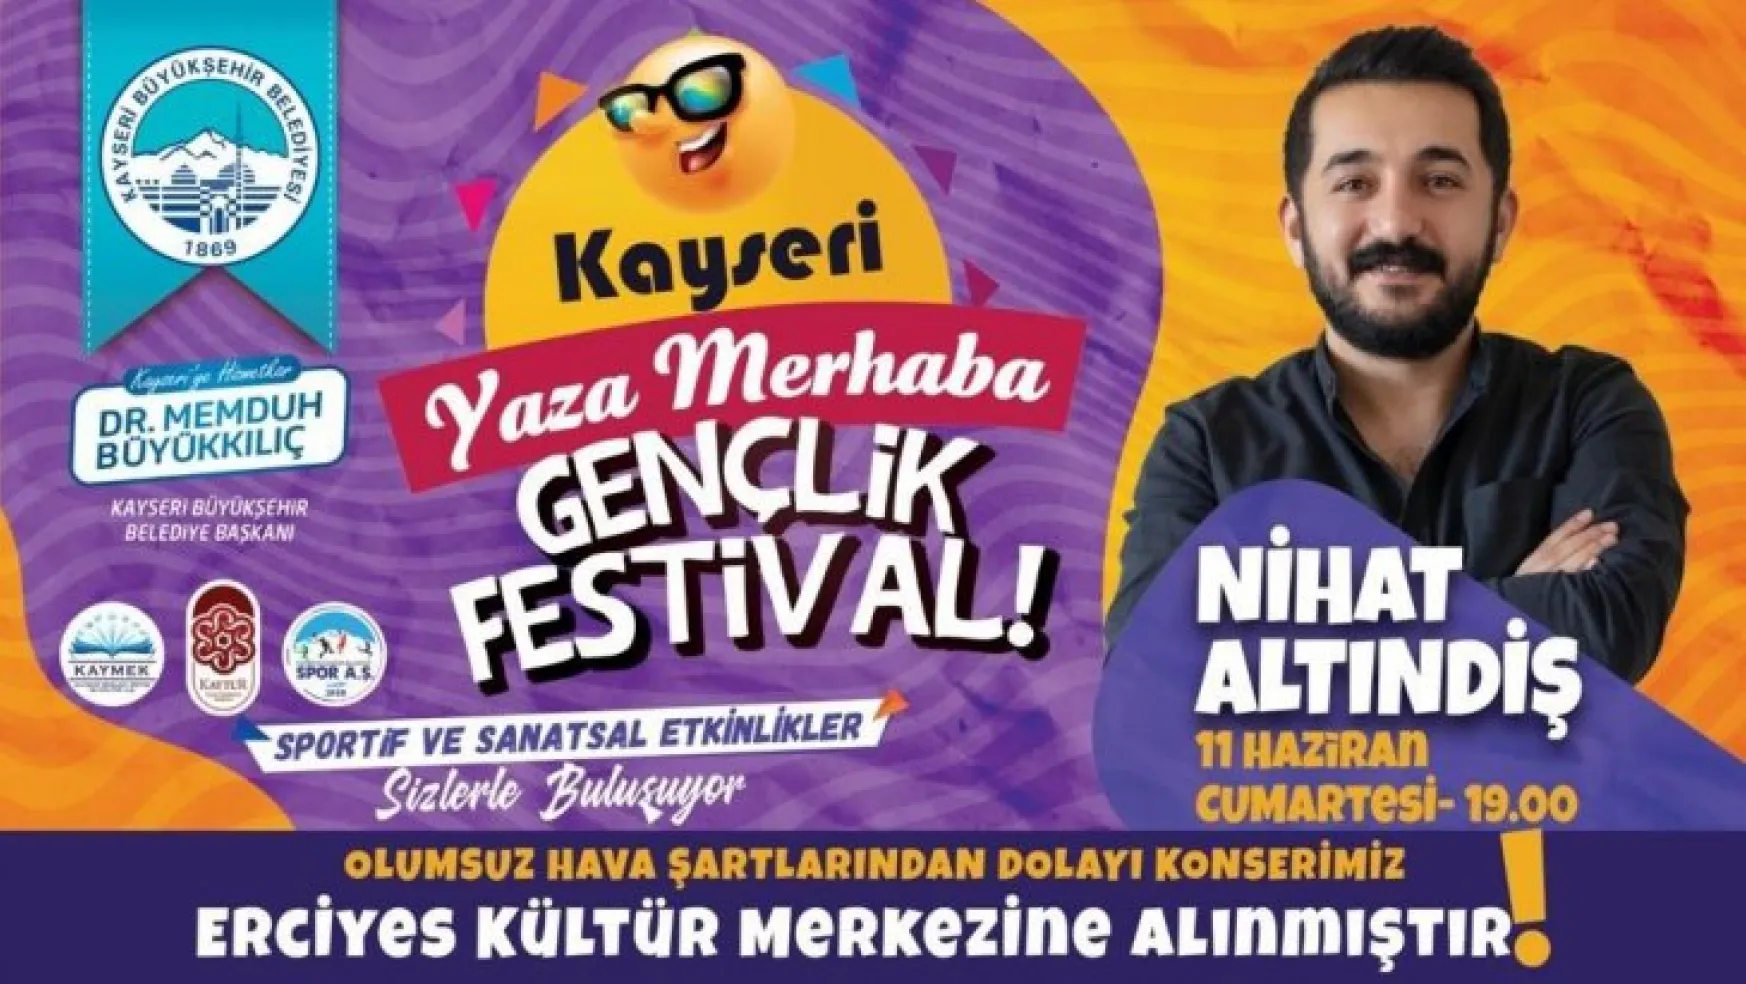 Büyükşehir'in hafta sonu gerçekleşecek Gençlik Festivali konserleri Erciyes Kültür Merkezi'ne alındı